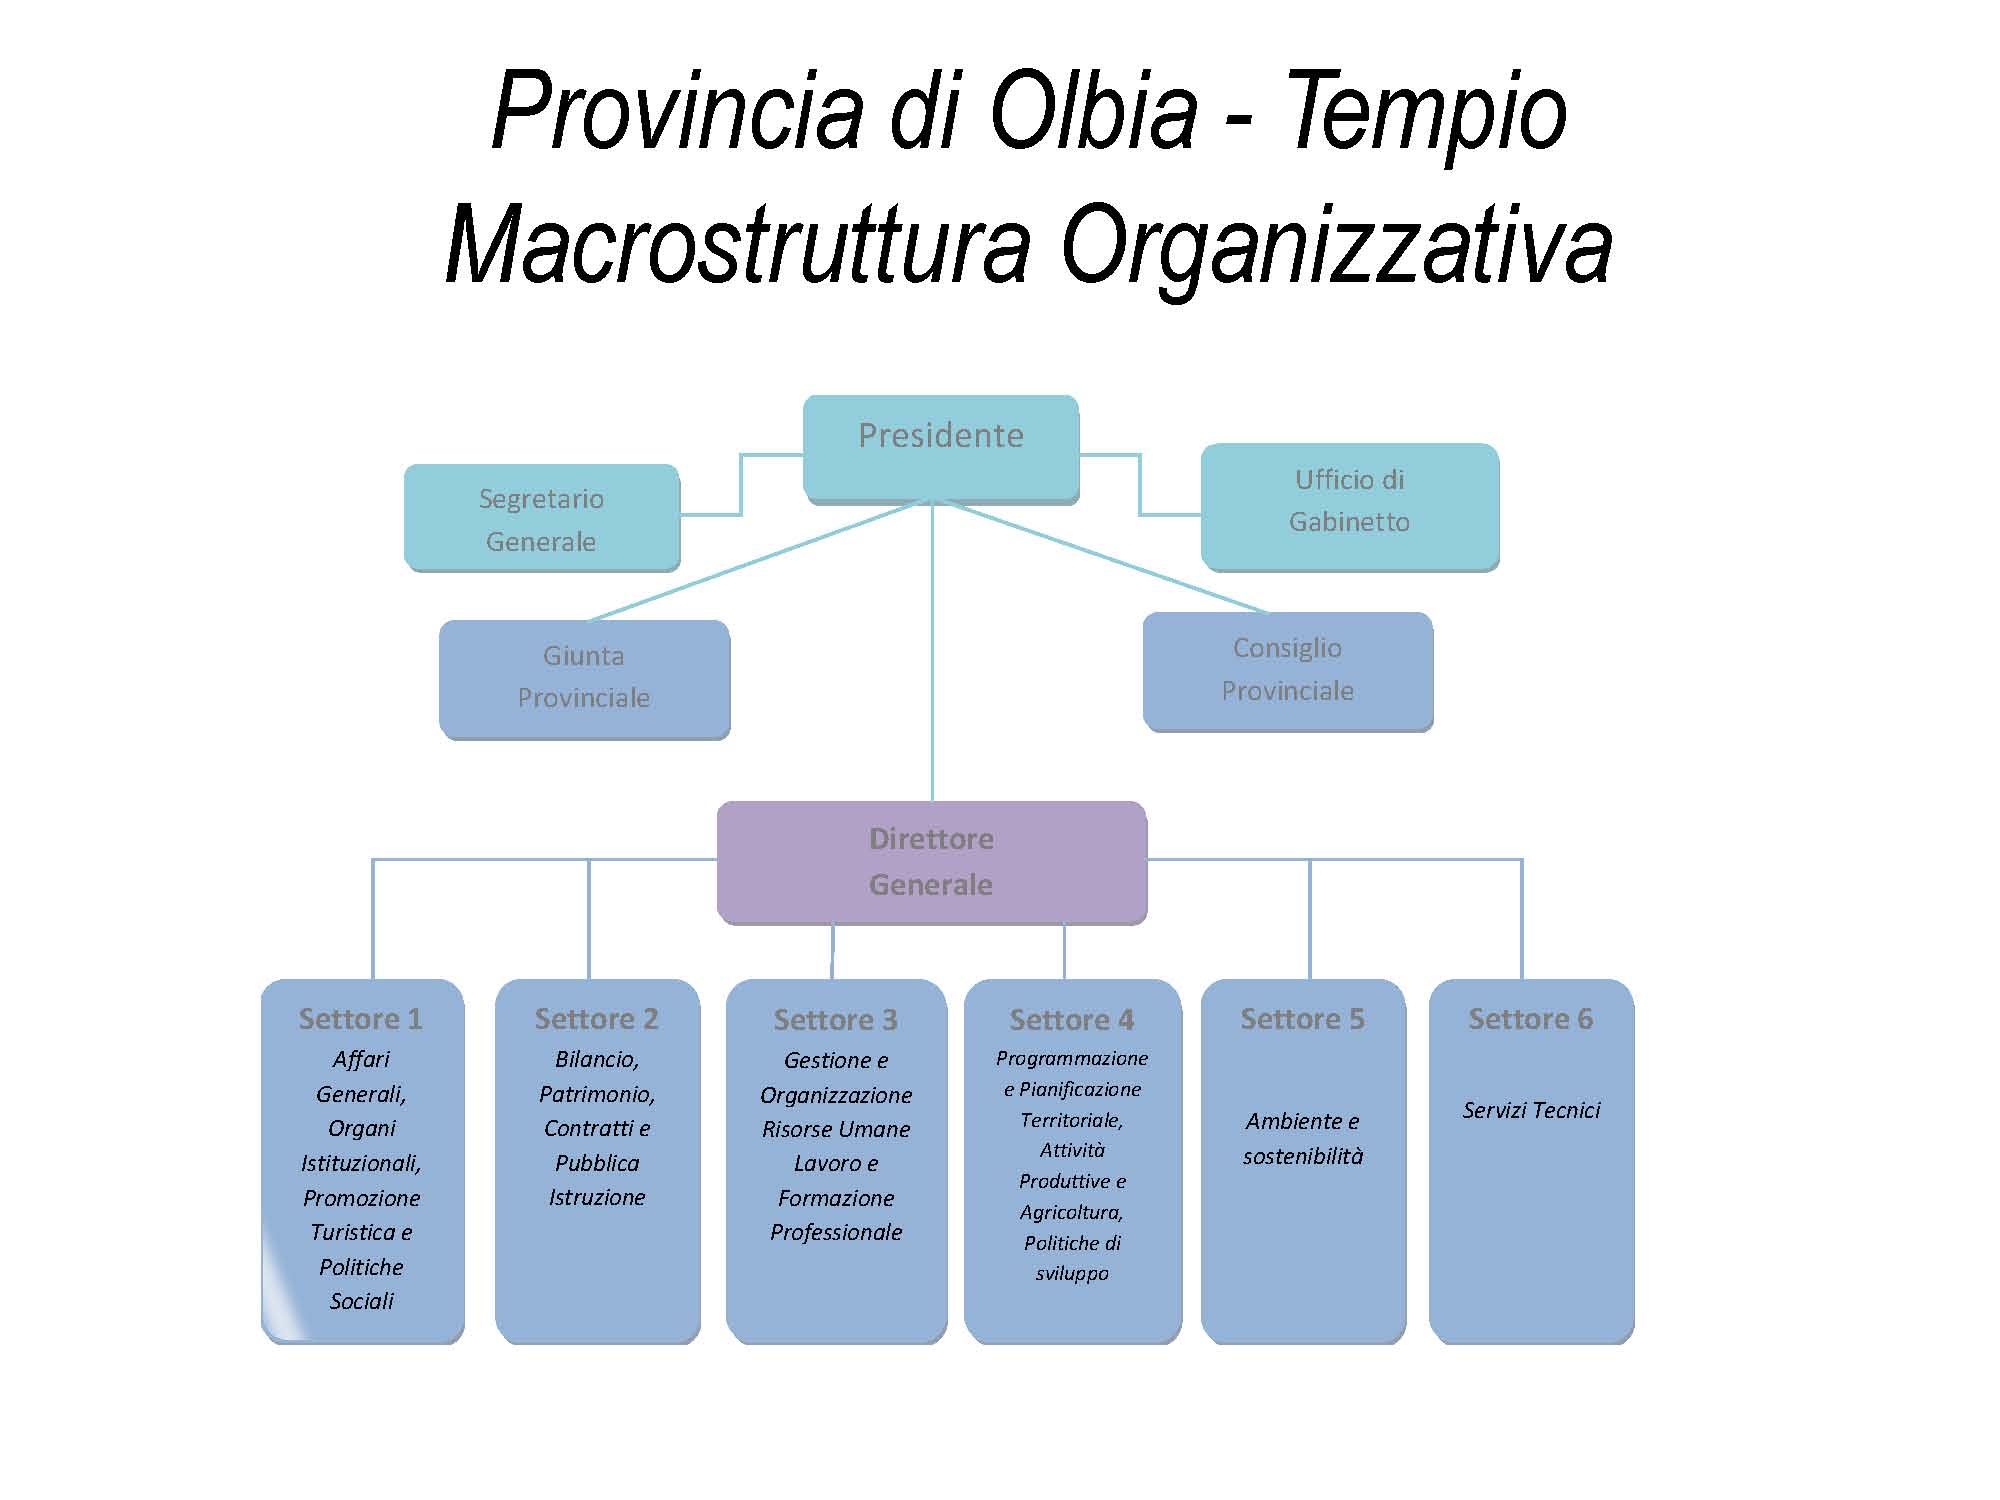 Macrostruttura Organizzativa diagramma di definizione dei Settori ed ambiti di competenza